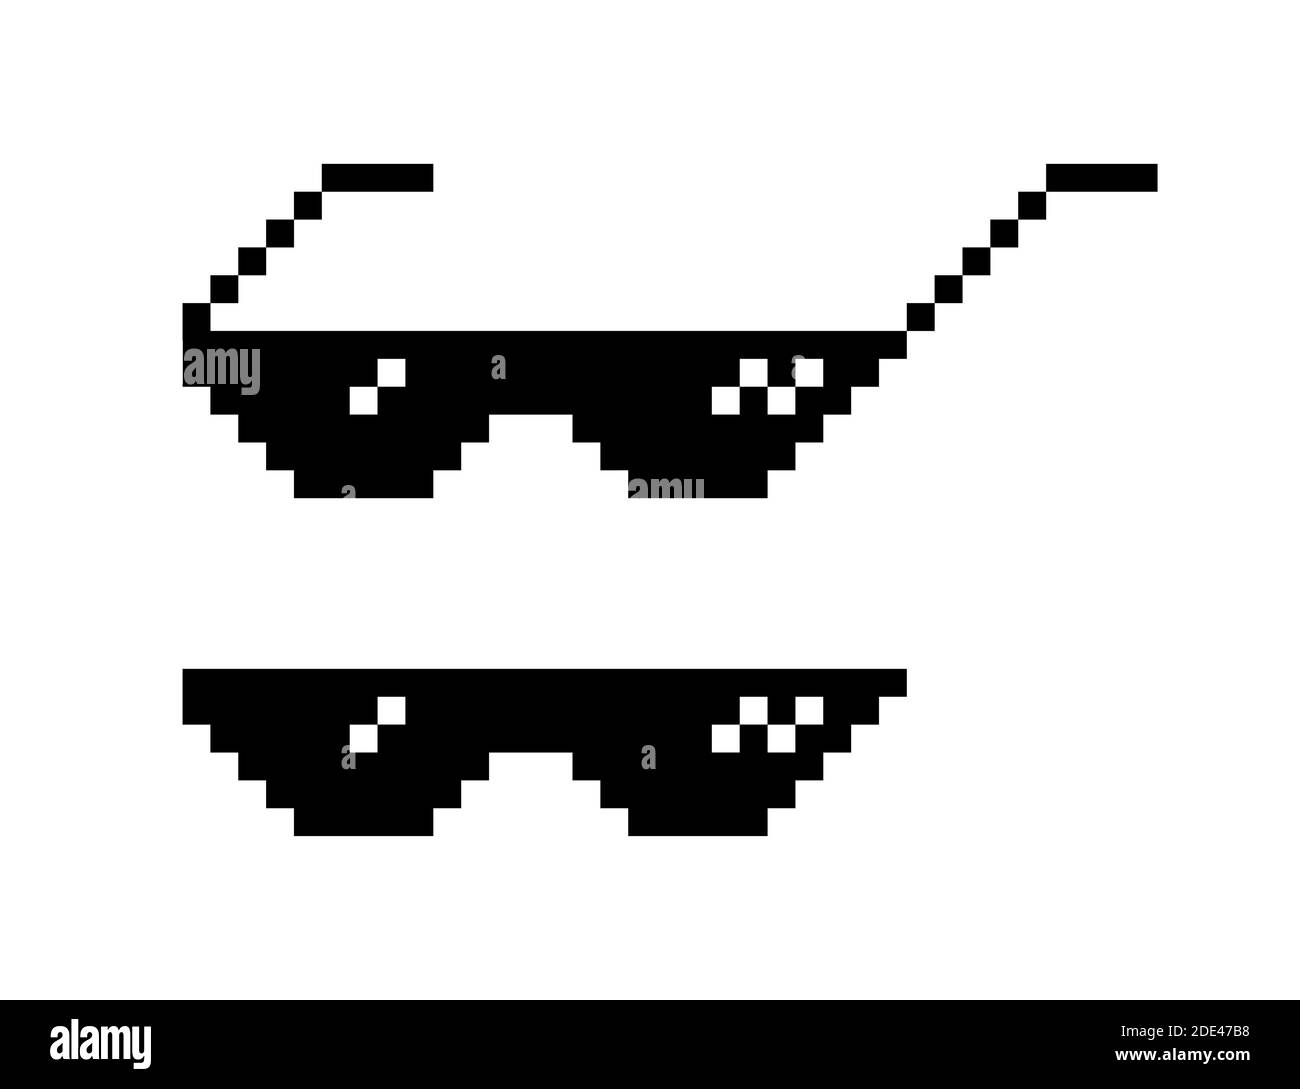 udvikling alliance Bær Set of pixel glasses in art style 8-bit. Thug life. Internet meme. Vector  stock illustration Stock Vector Image & Art - Alamy